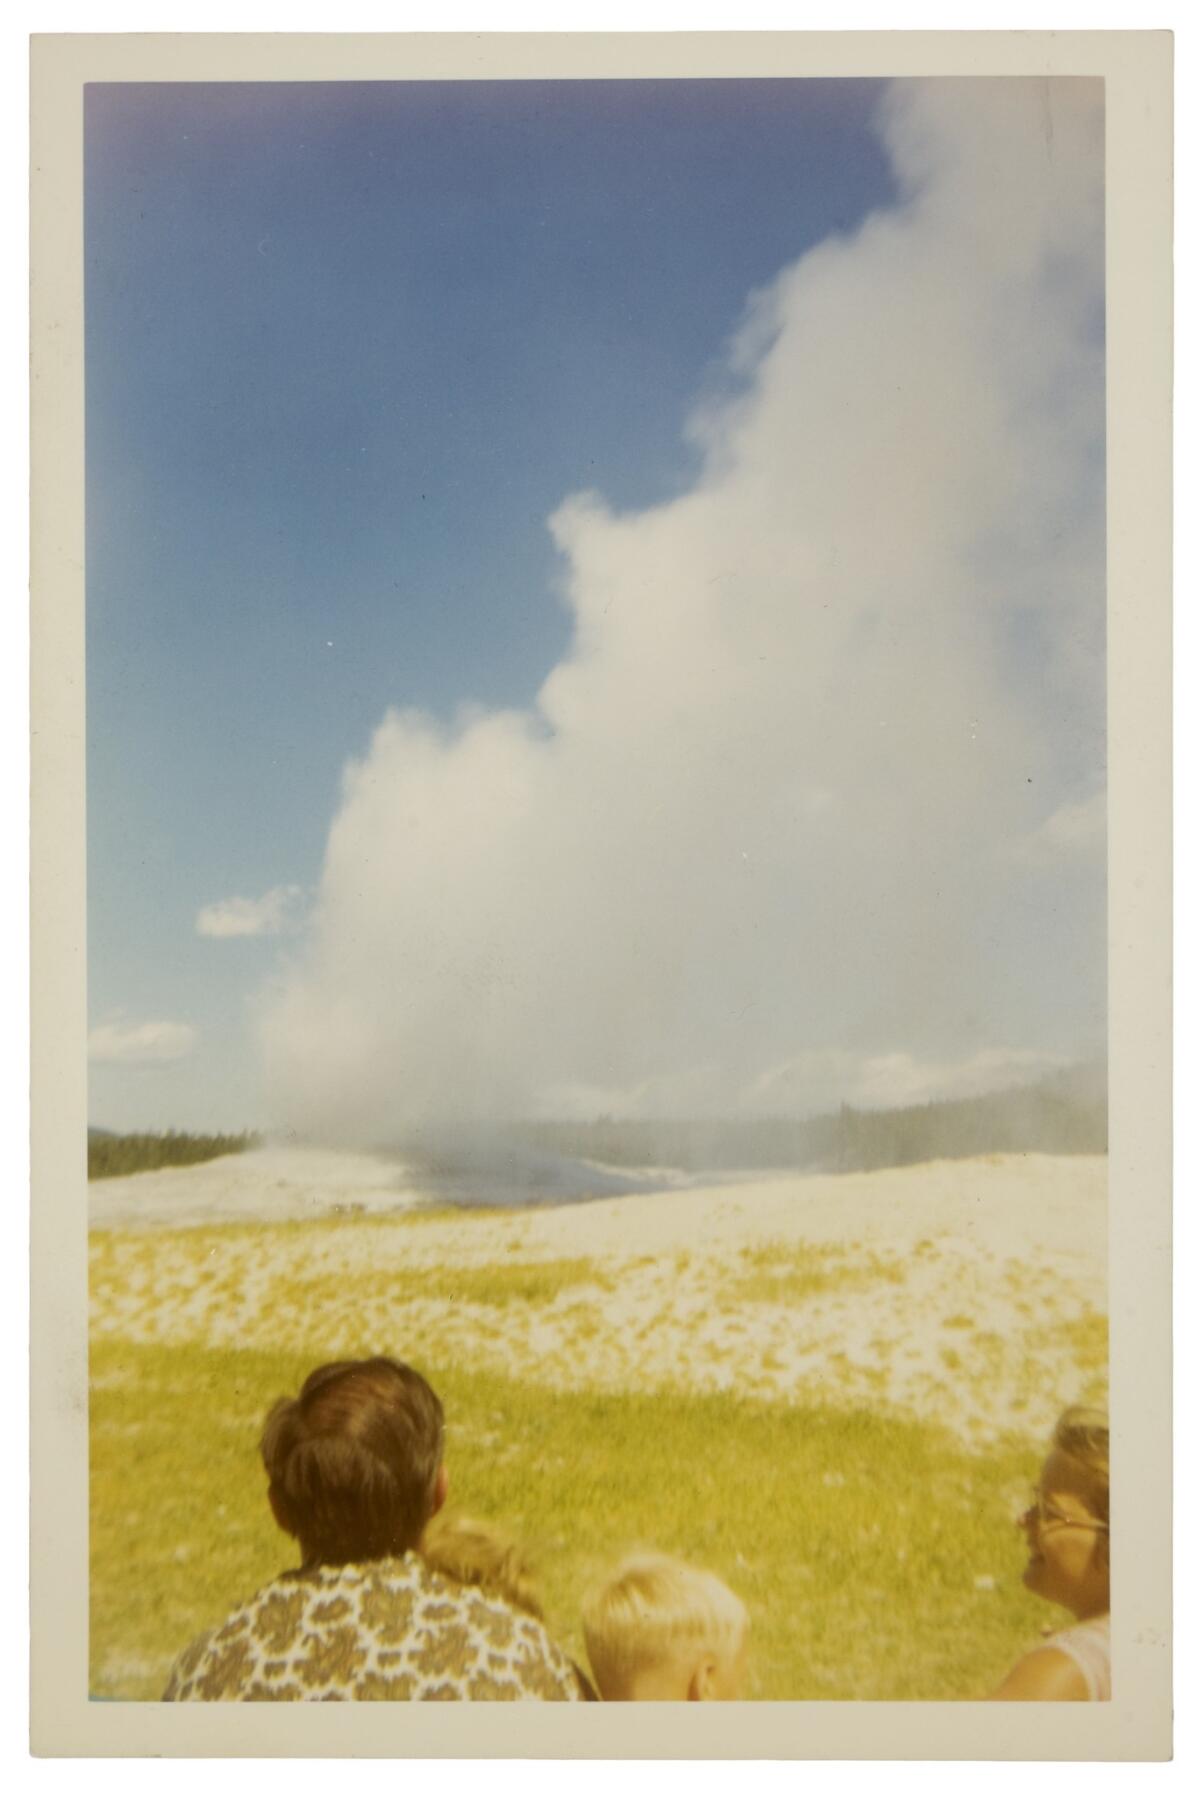 Fotógrafo desconocido, Géiser Old Faithful, Parque Nacional de Yellowstone, agosto de 1968 (cortesía del Museo George Eastman, regalo de Peter J. Cohen).